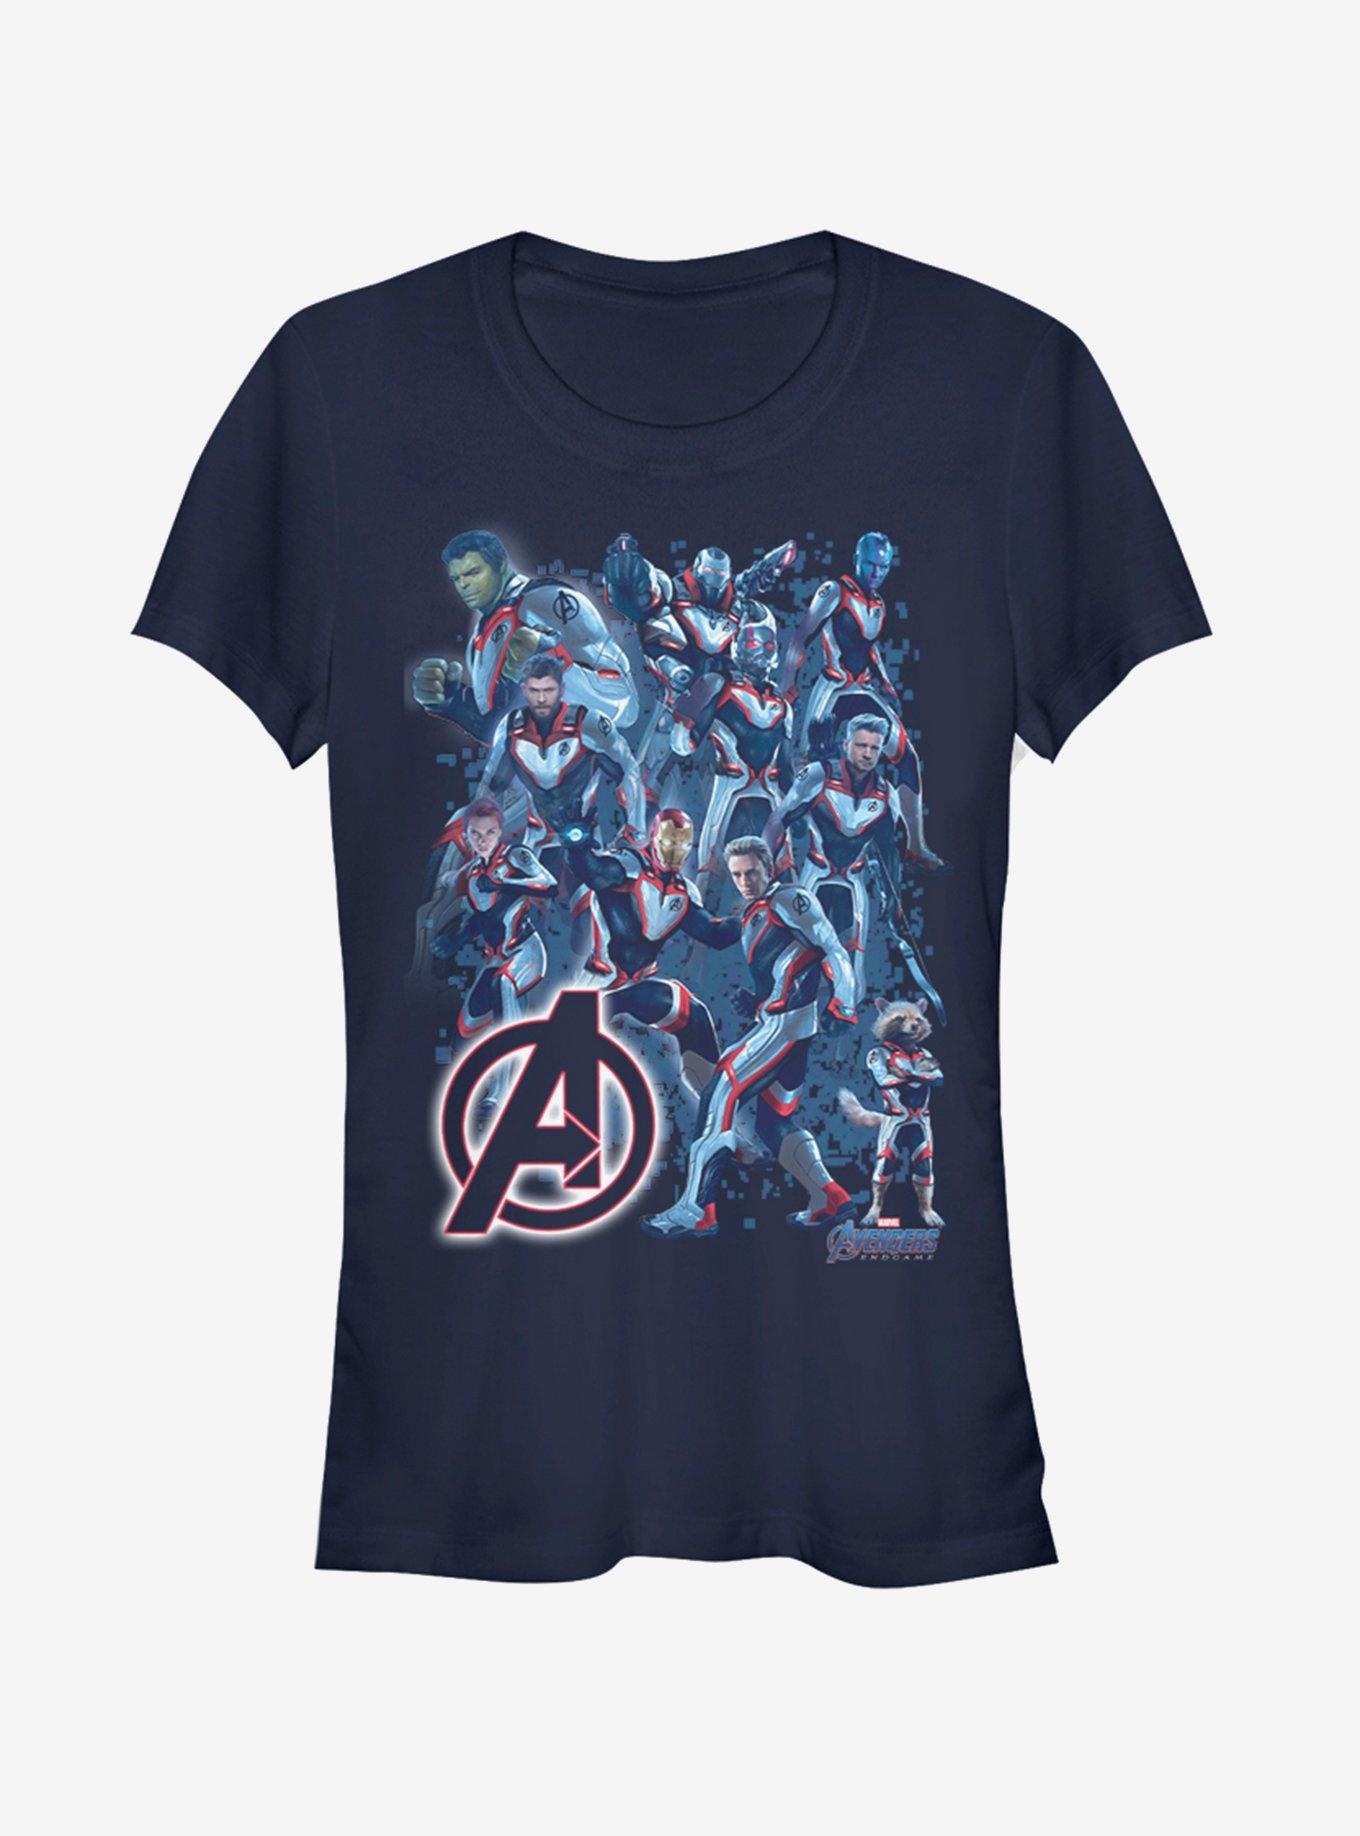 Marvel Avengers: Endgame Suit Group Girls Navy Blue T-Shirt, NAVY, hi-res